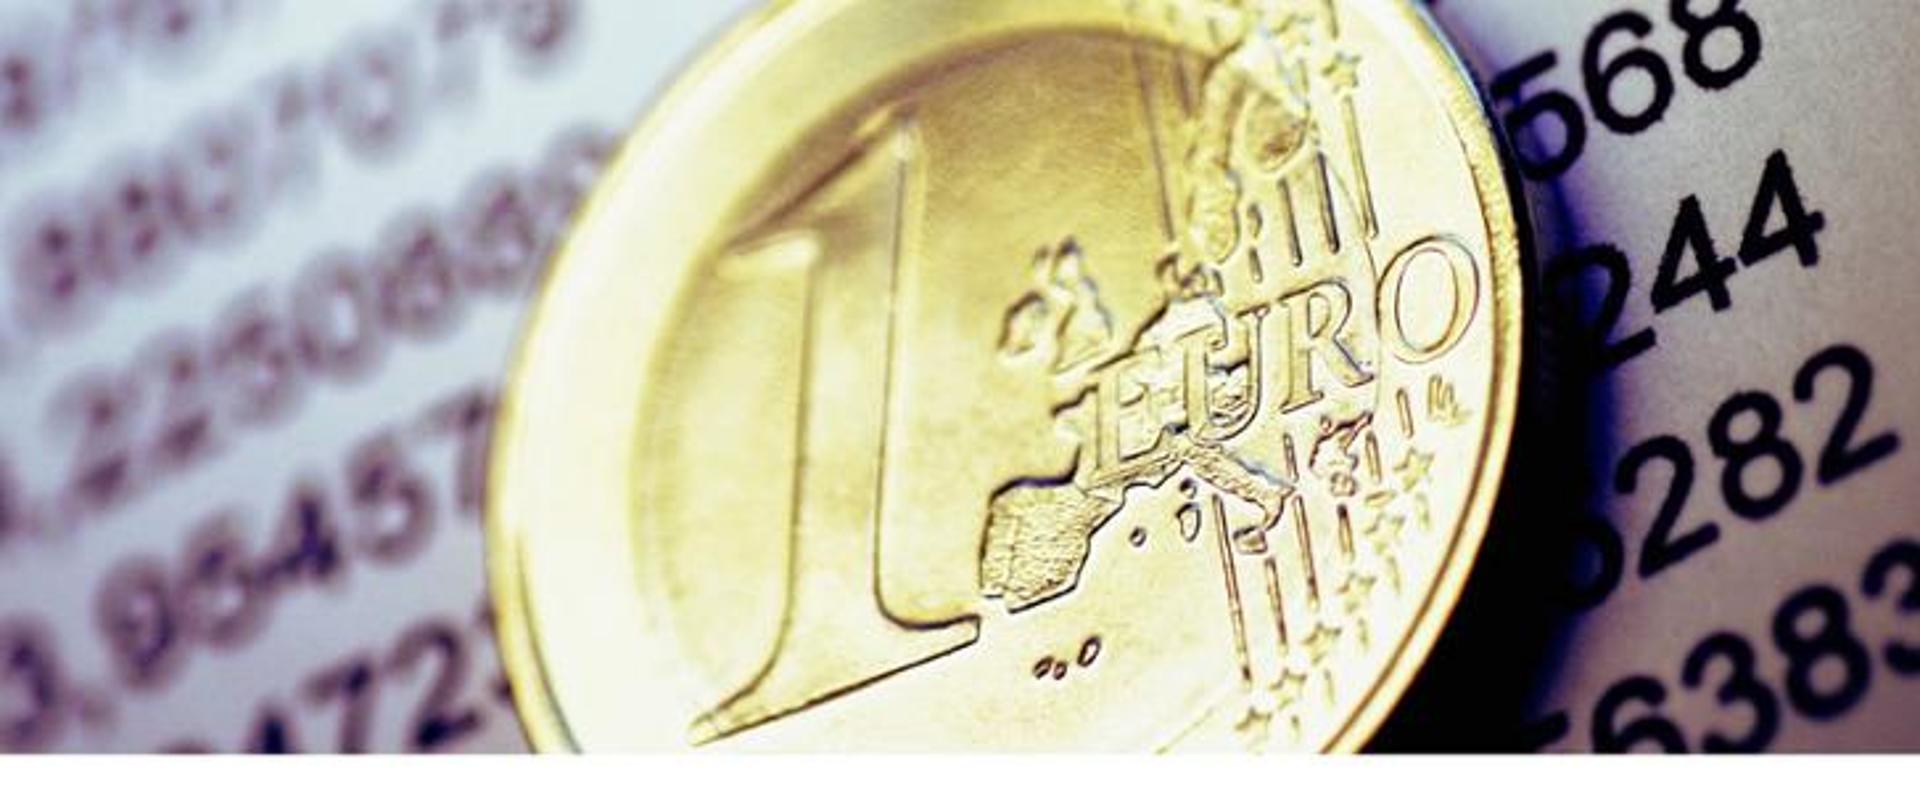 Moneta 1 EURO.